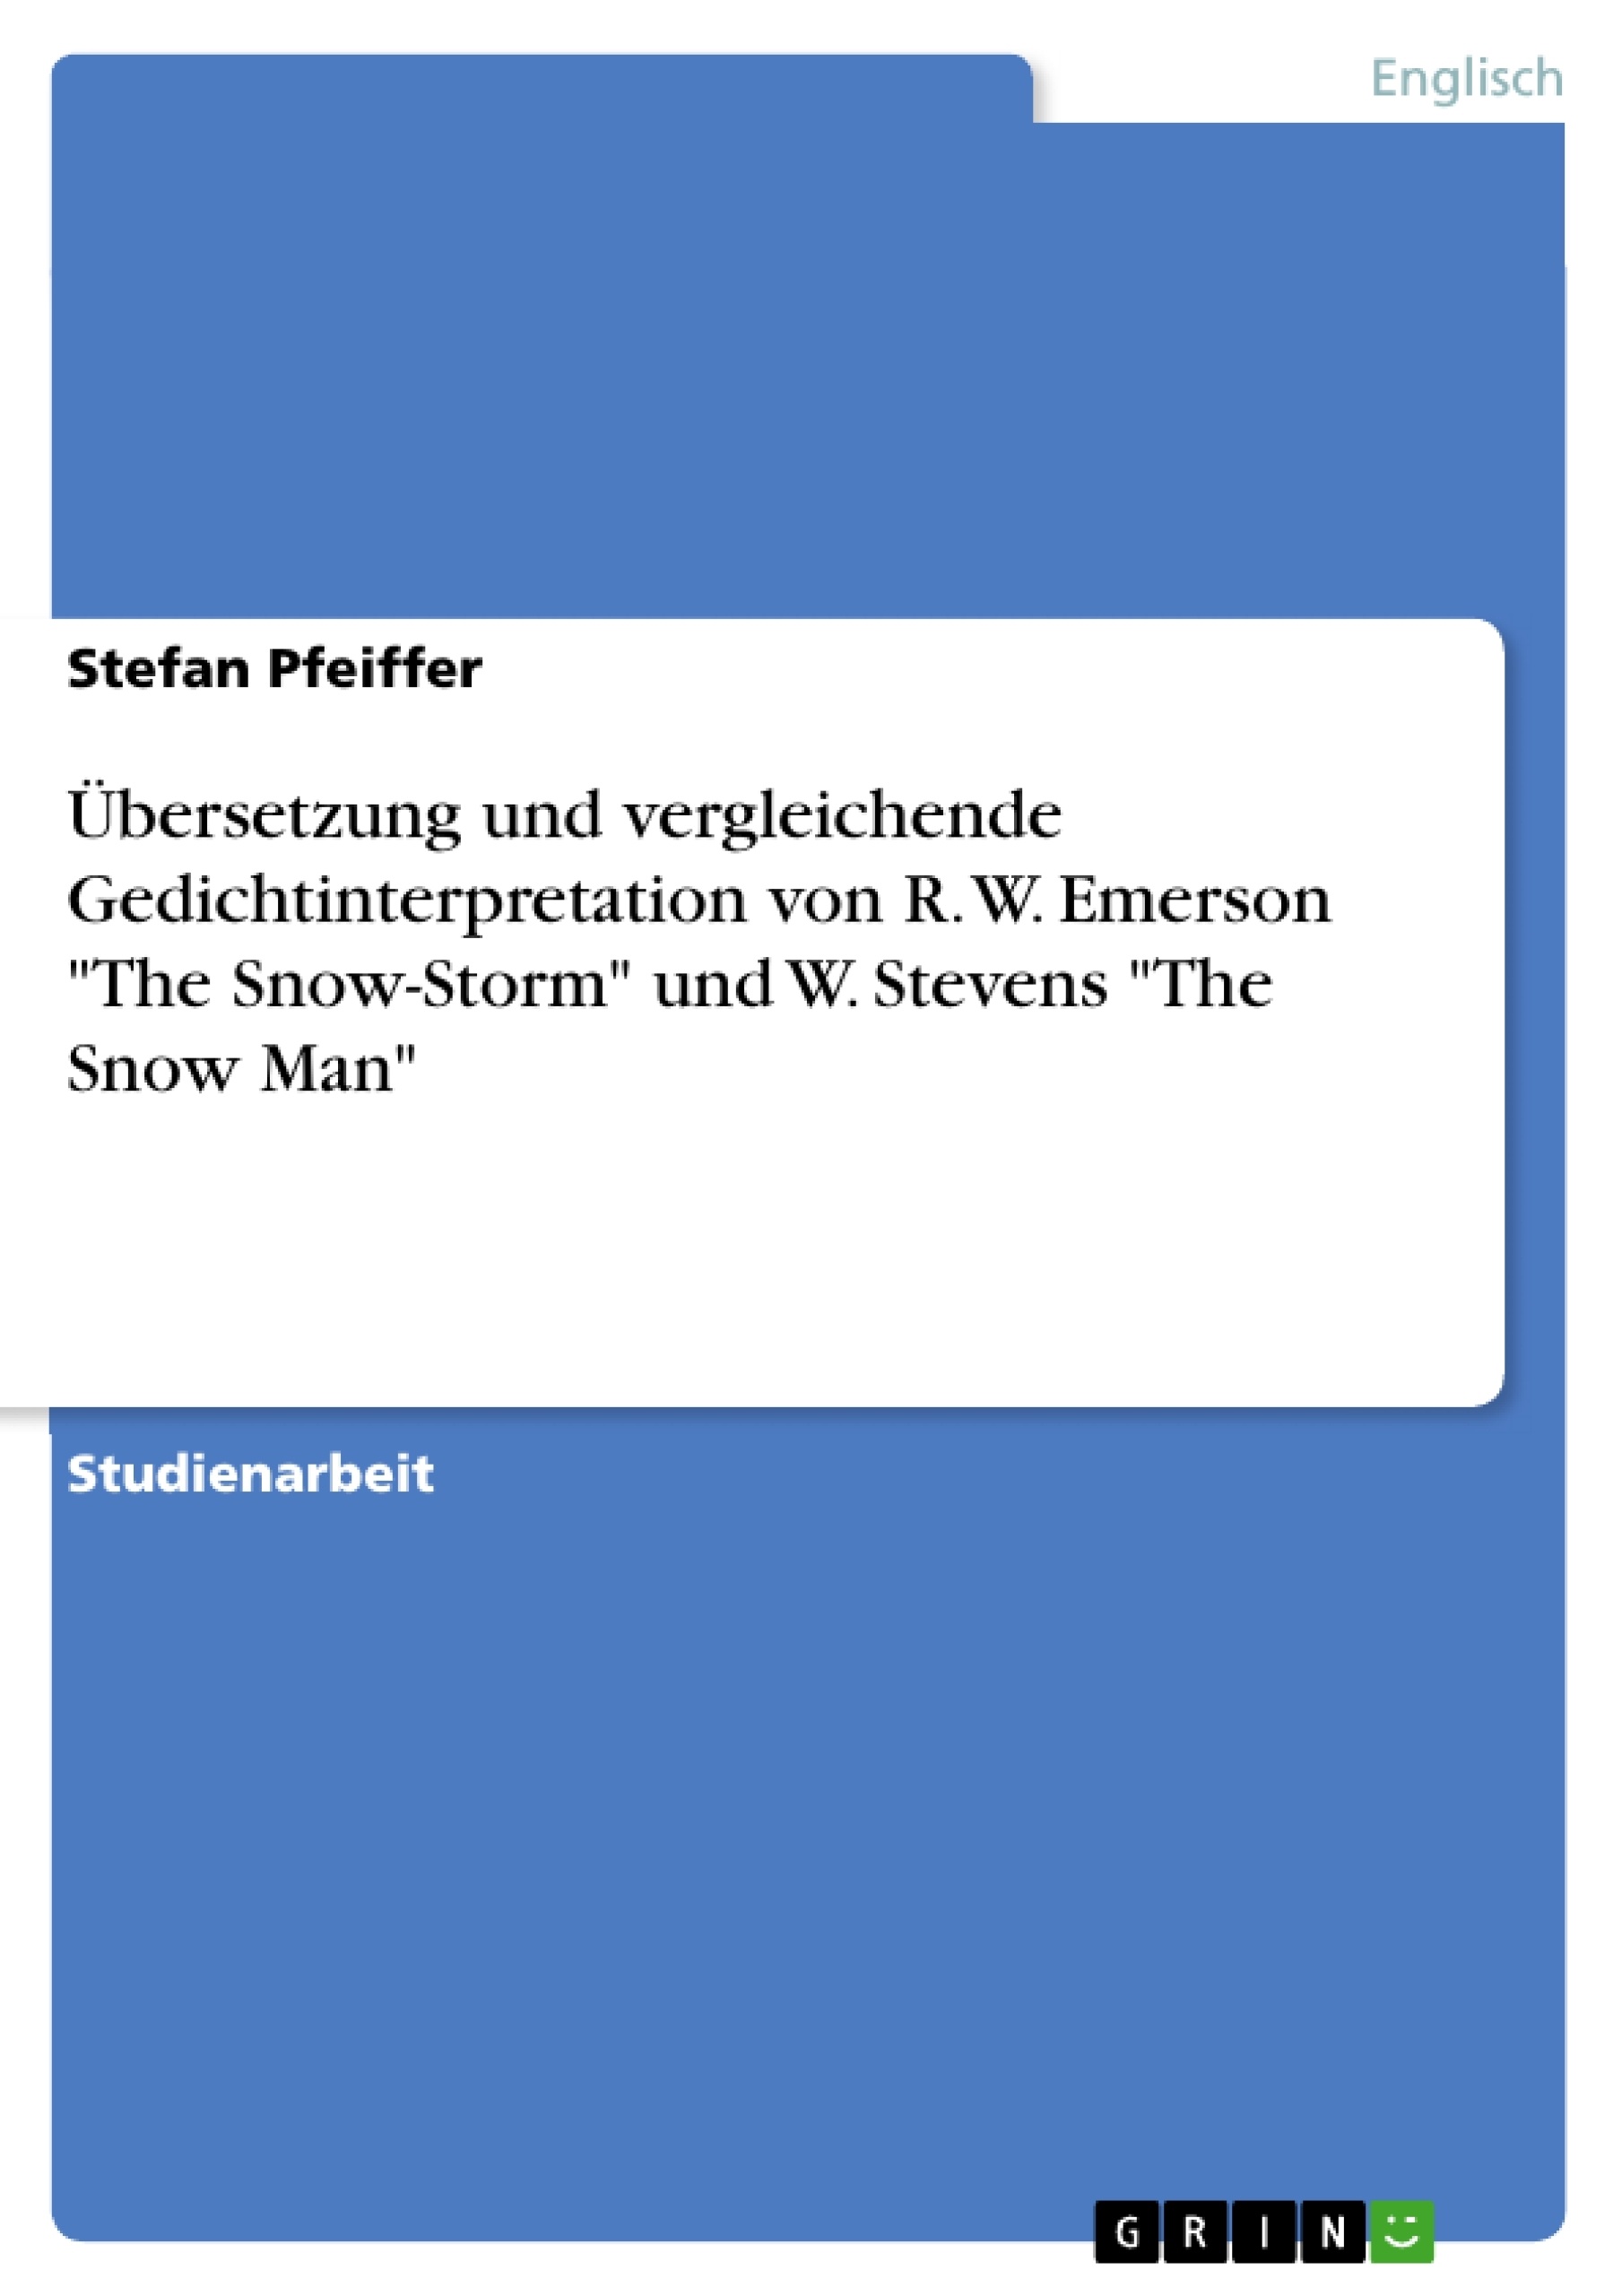 Title: Übersetzung und vergleichende Gedichtinterpretation von R. W. Emerson "The Snow-Storm" und W. Stevens "The Snow Man"